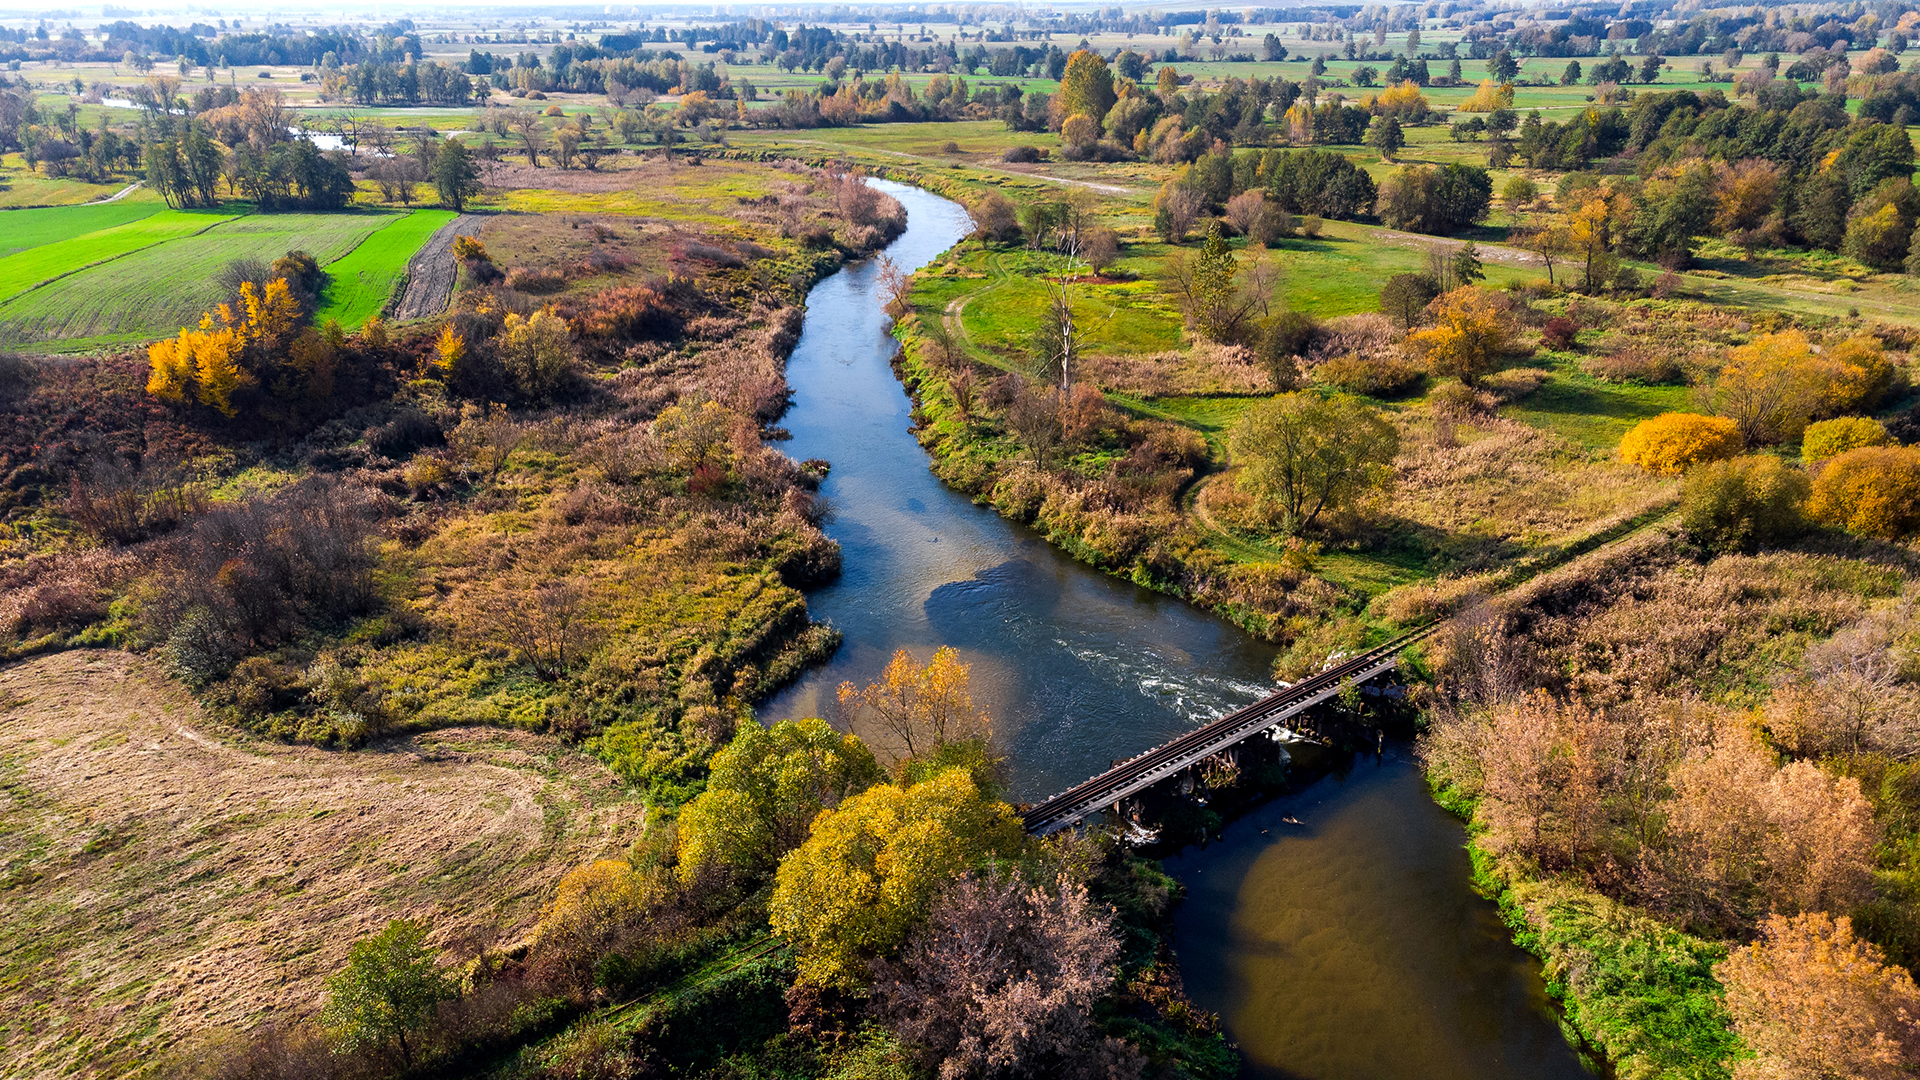 Rzeka Nida Curvy Nida River Bends in świętokrzyskie, Poland. Aerial Drone View